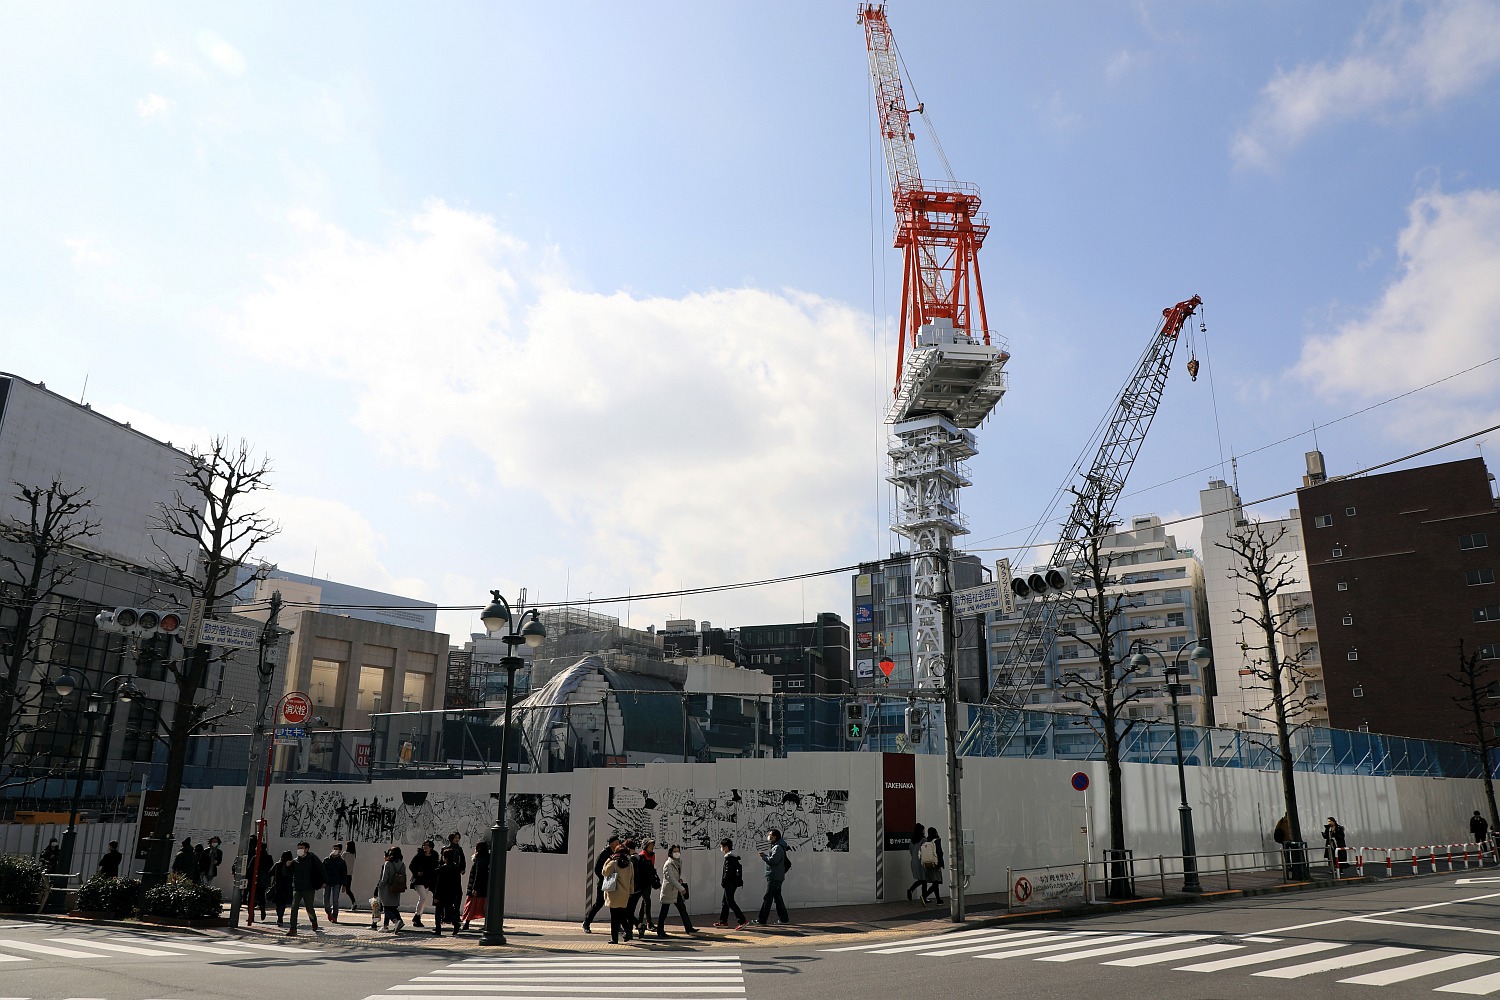 タワークレーン設置 高さ100m 渋谷パルコ の建替計画の建設状況 18 2 17 超高層マンション 超高層ビル